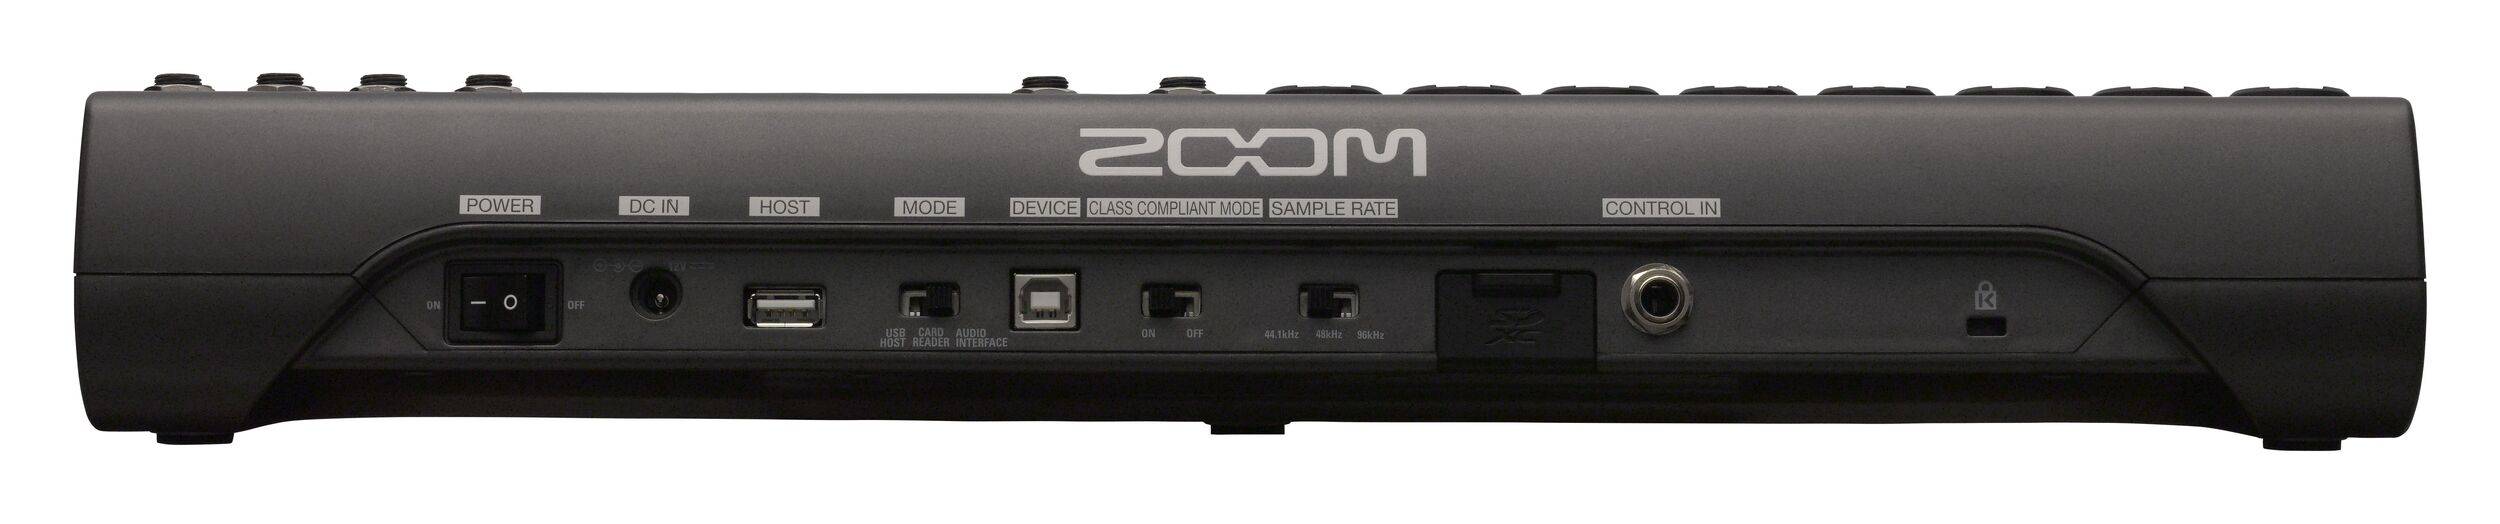 Mezcladora Zoom L12 de 12 canales